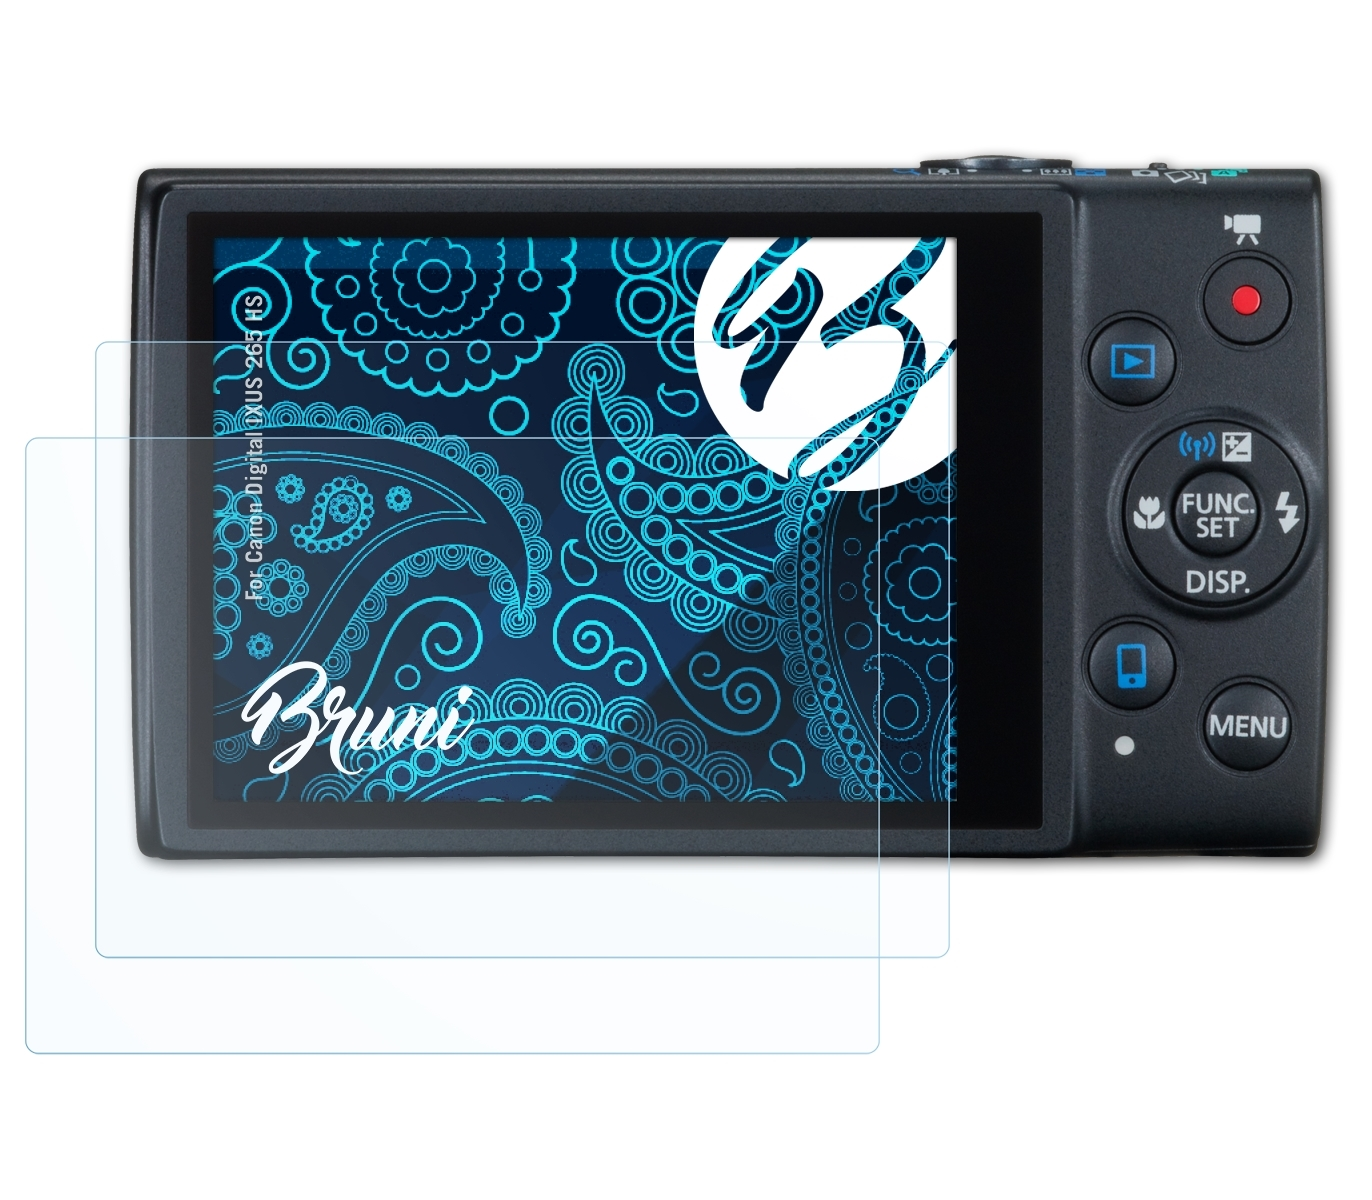 IXUS 265 Digital BRUNI Basics-Clear Schutzfolie(für HS) Canon 2x